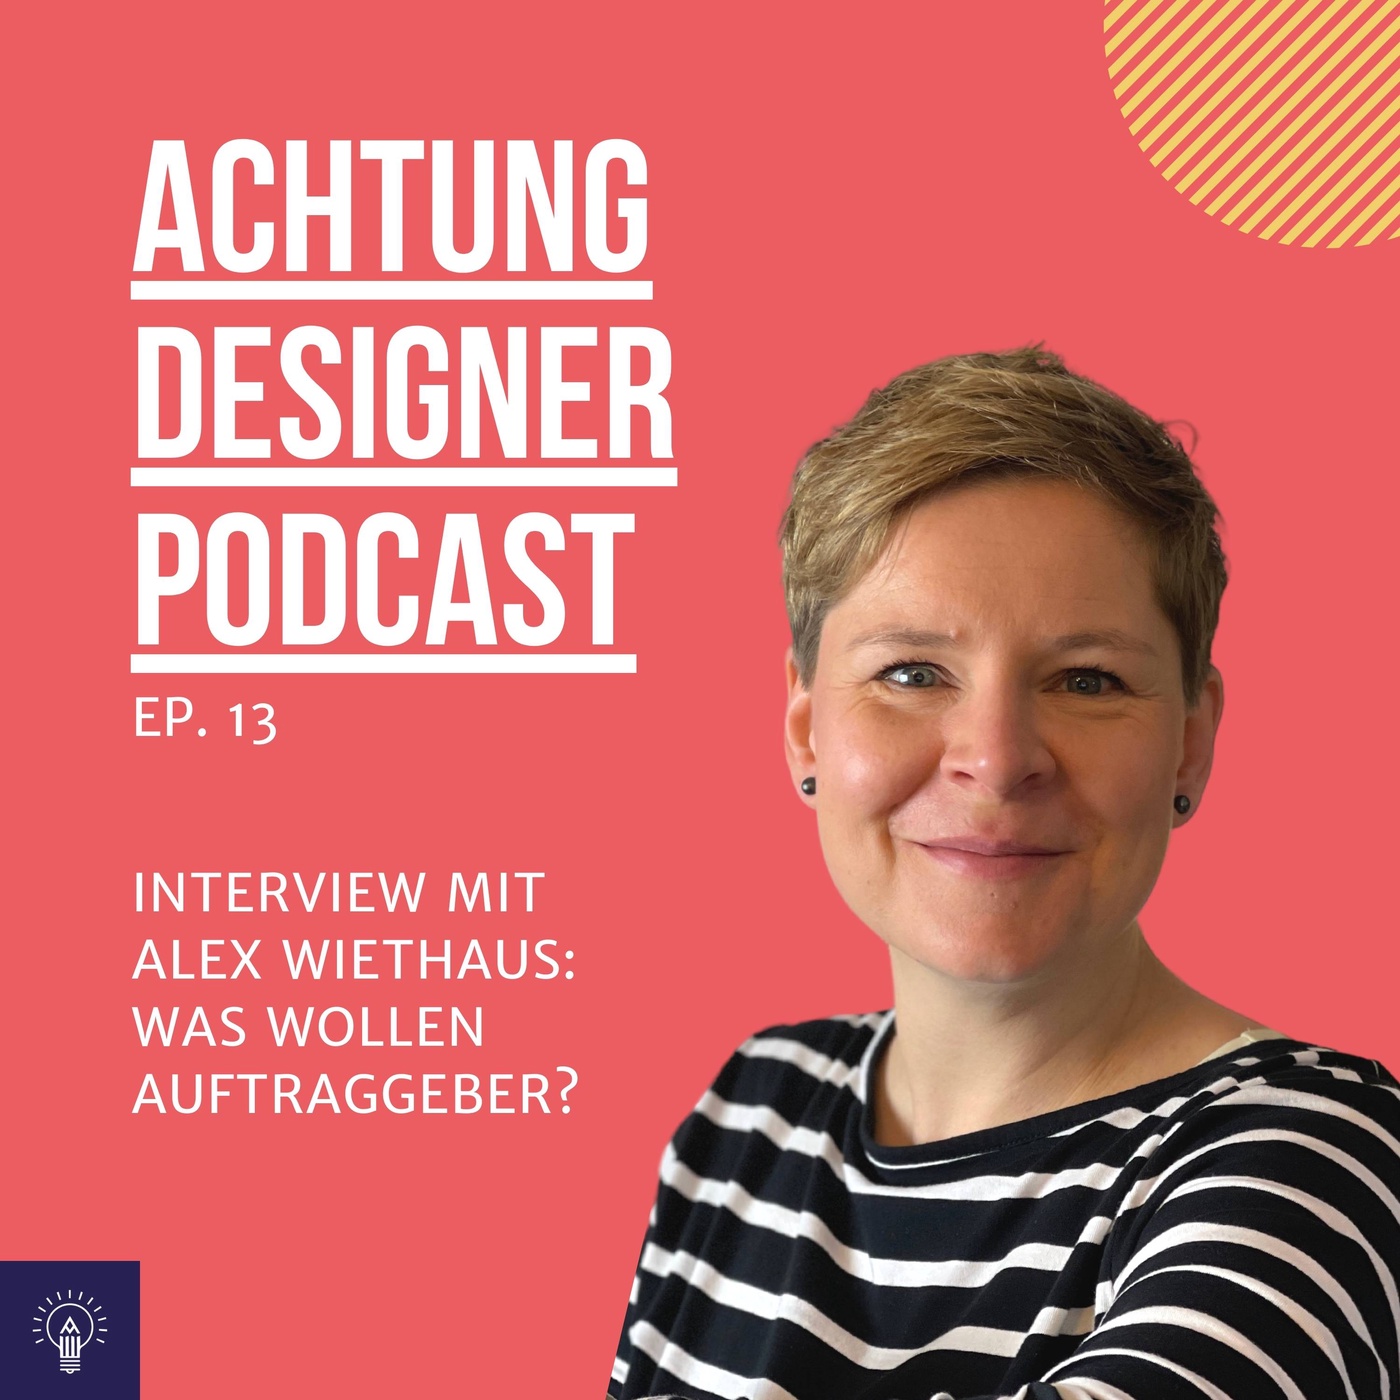 EP. 13: Was wollen Auftraggeber von Designern?